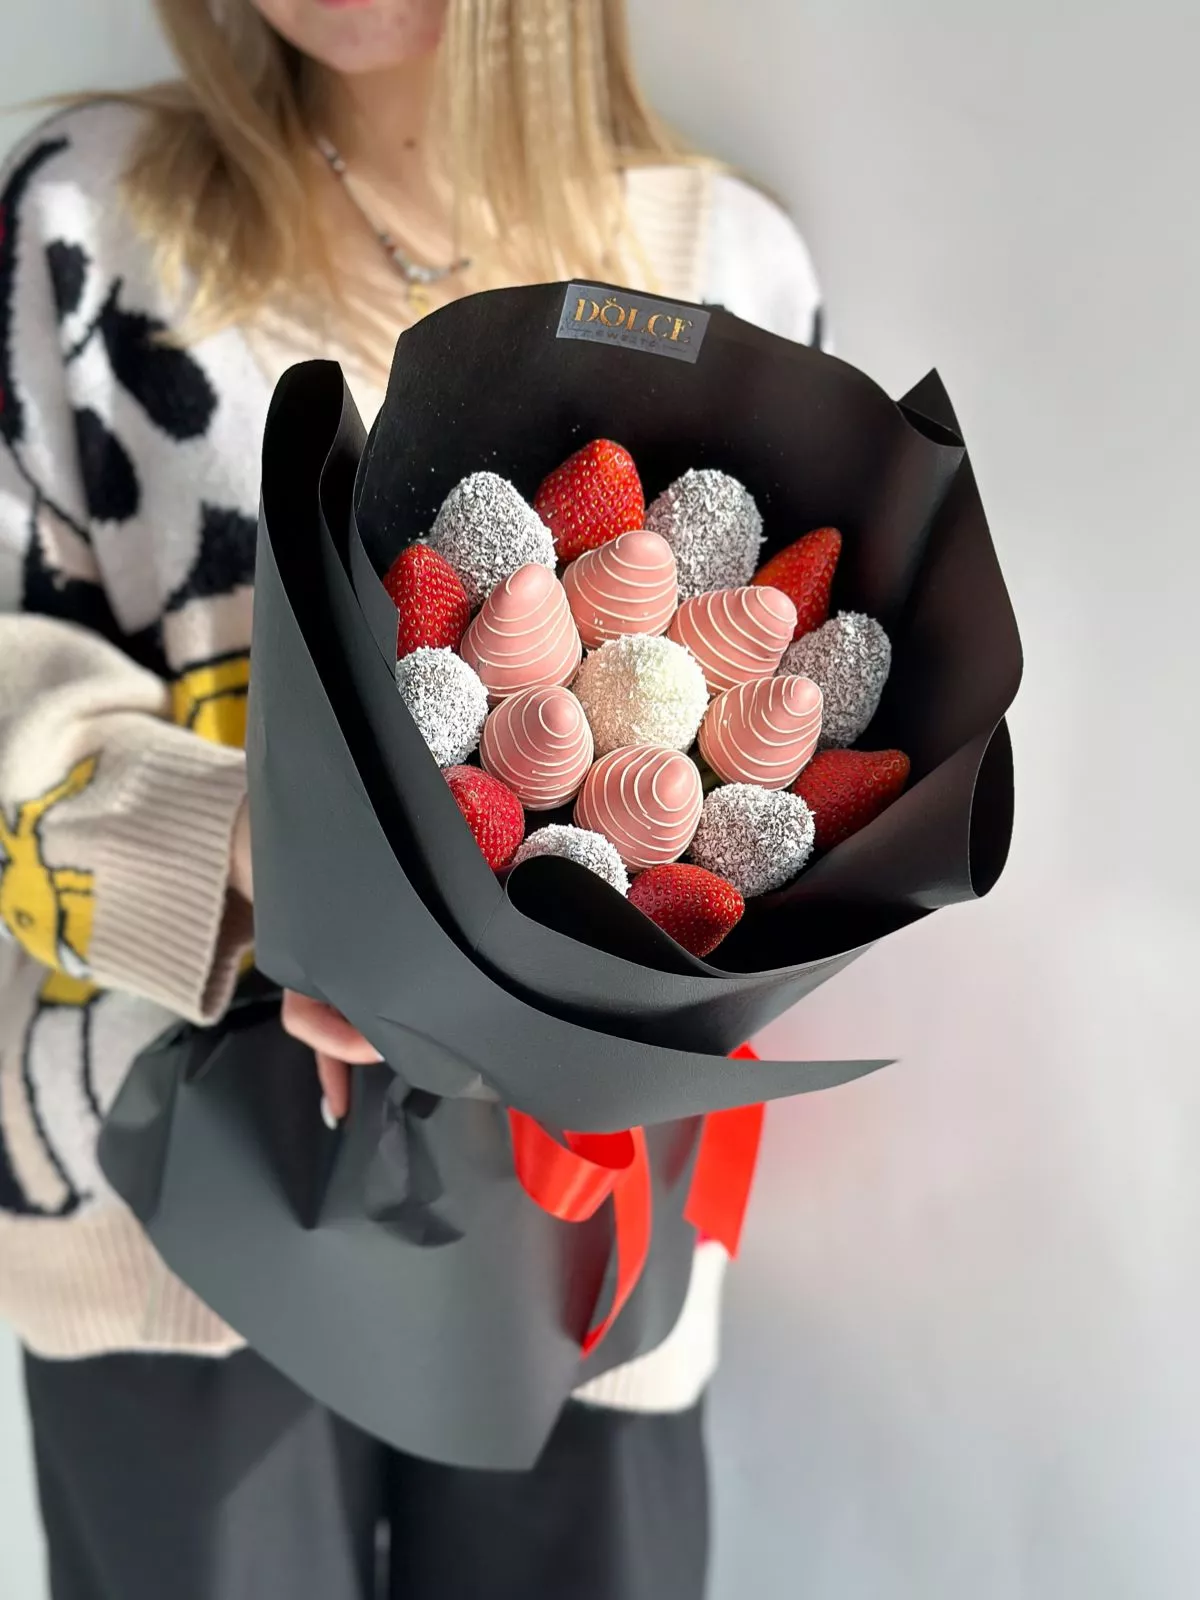 Клубничный букет "SweetBerry" из клубники в шоколаде и свежих ягод